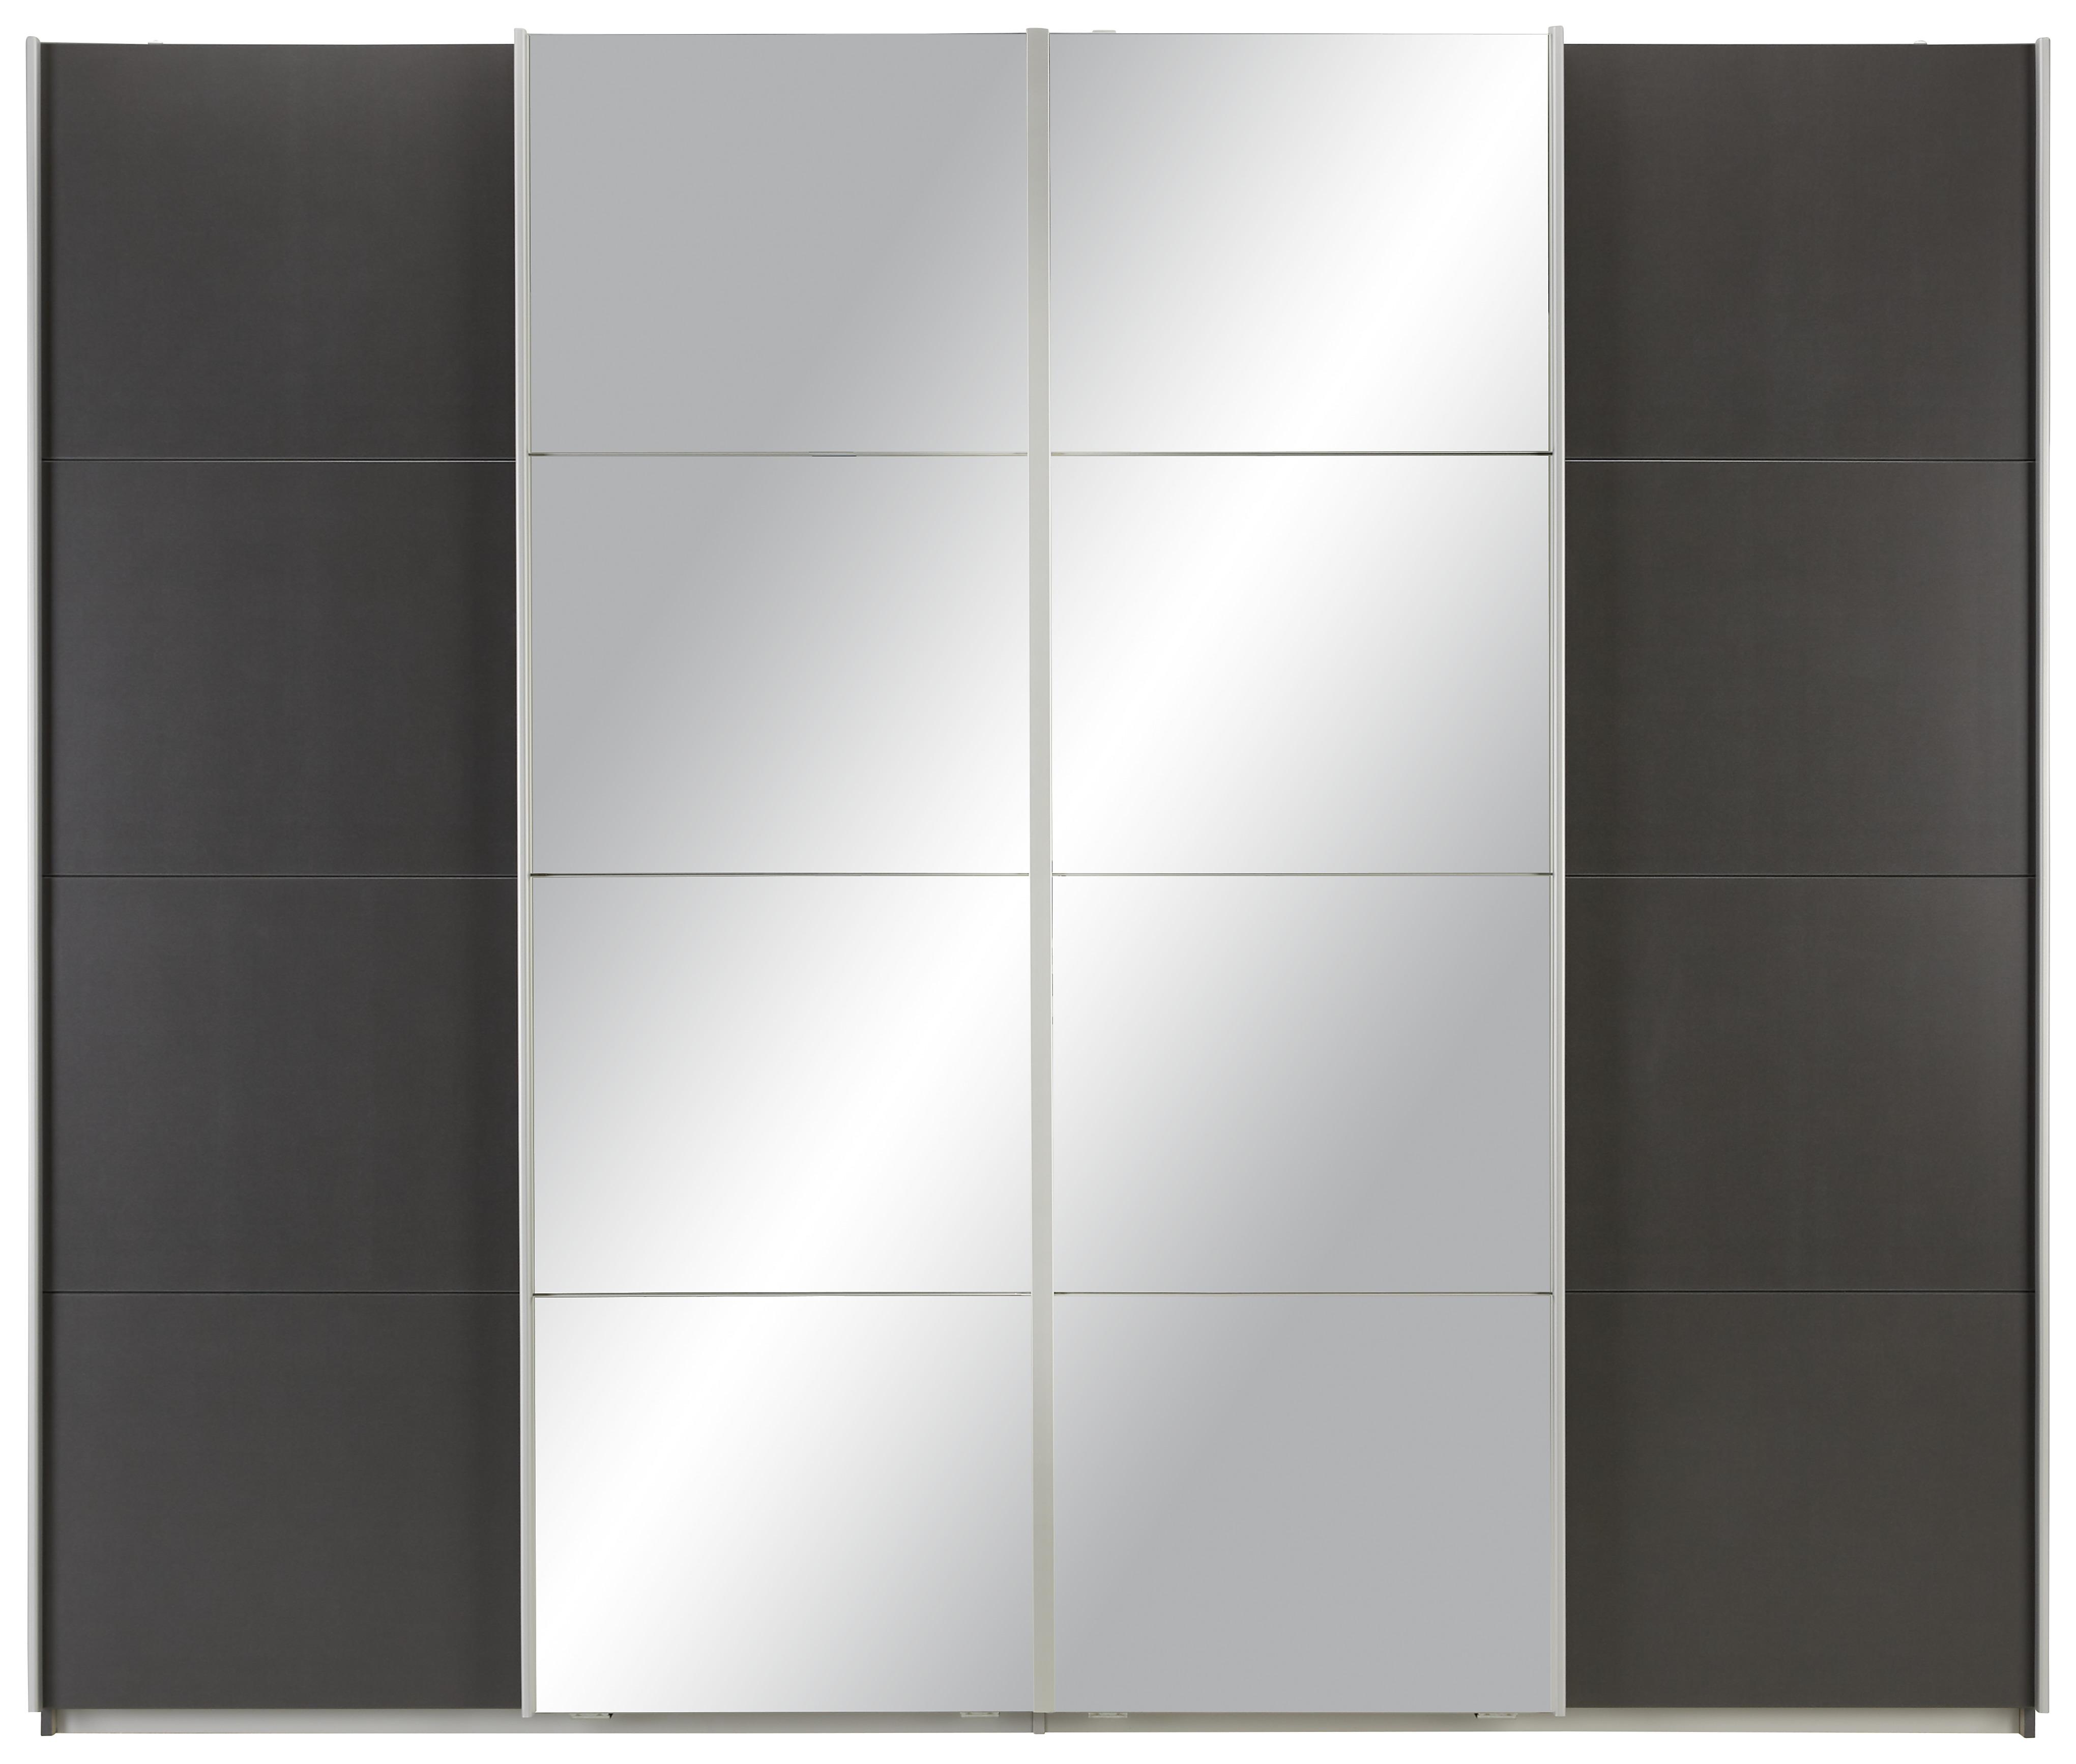 Schwebetürenschrank in Grau mit Spiegel - Alufarben, KONVENTIONELL, Holzwerkstoff/Metall (270/230/62cm) - Based